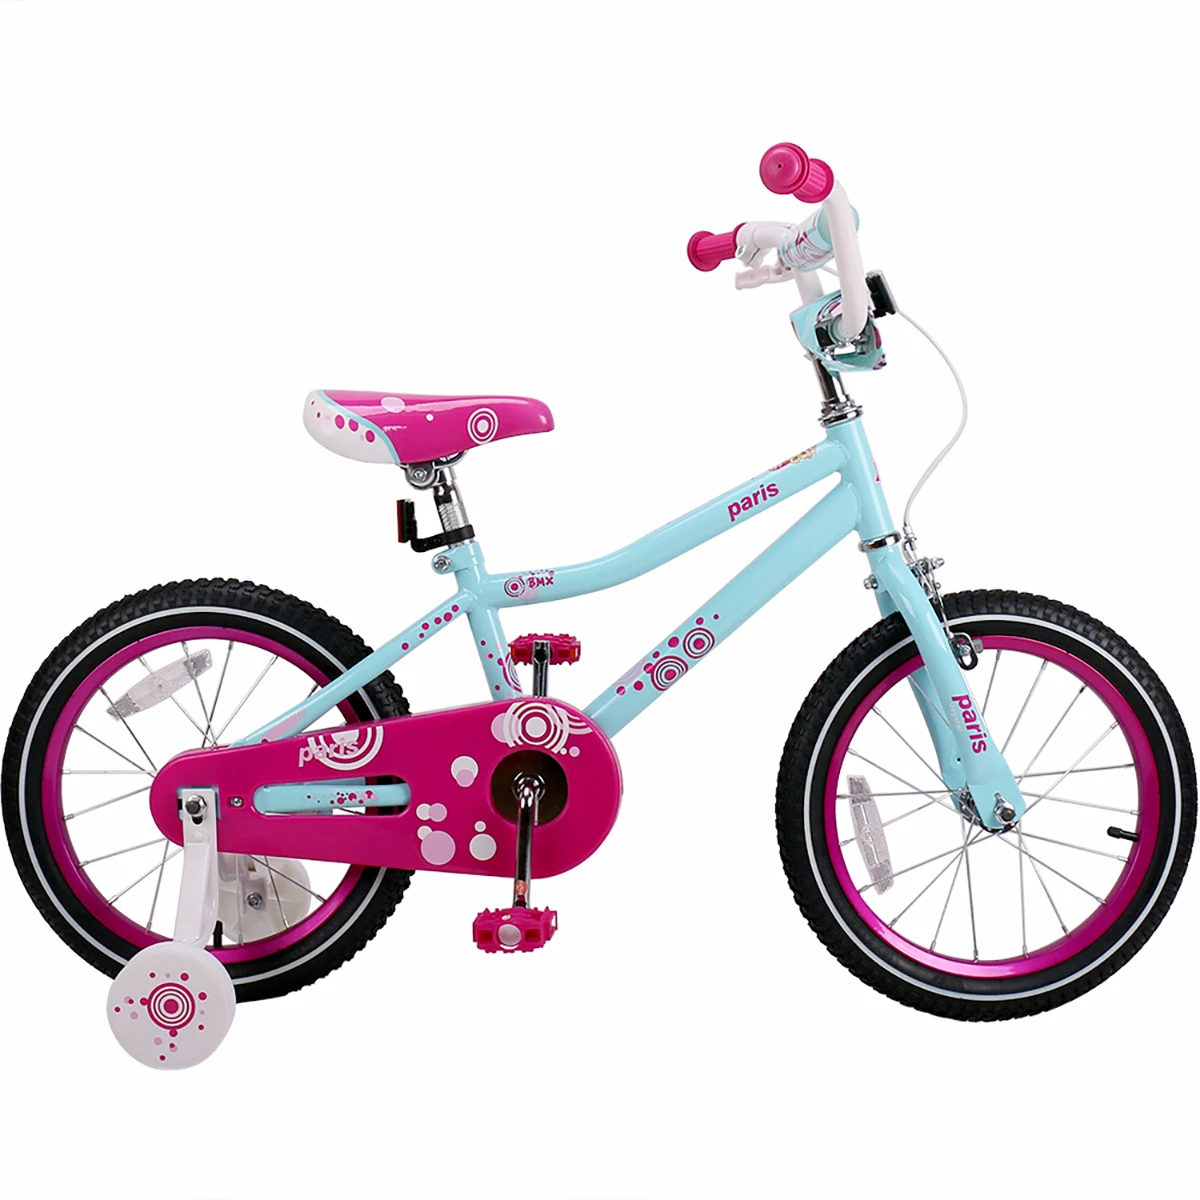 Детский велосипед от 5 лет для девочки. Велосипед Glory детский 16 дюймов. Велосипед детский для девочки Cube 200. Велосипед для девочки 3 года. Дети с велосипедом.